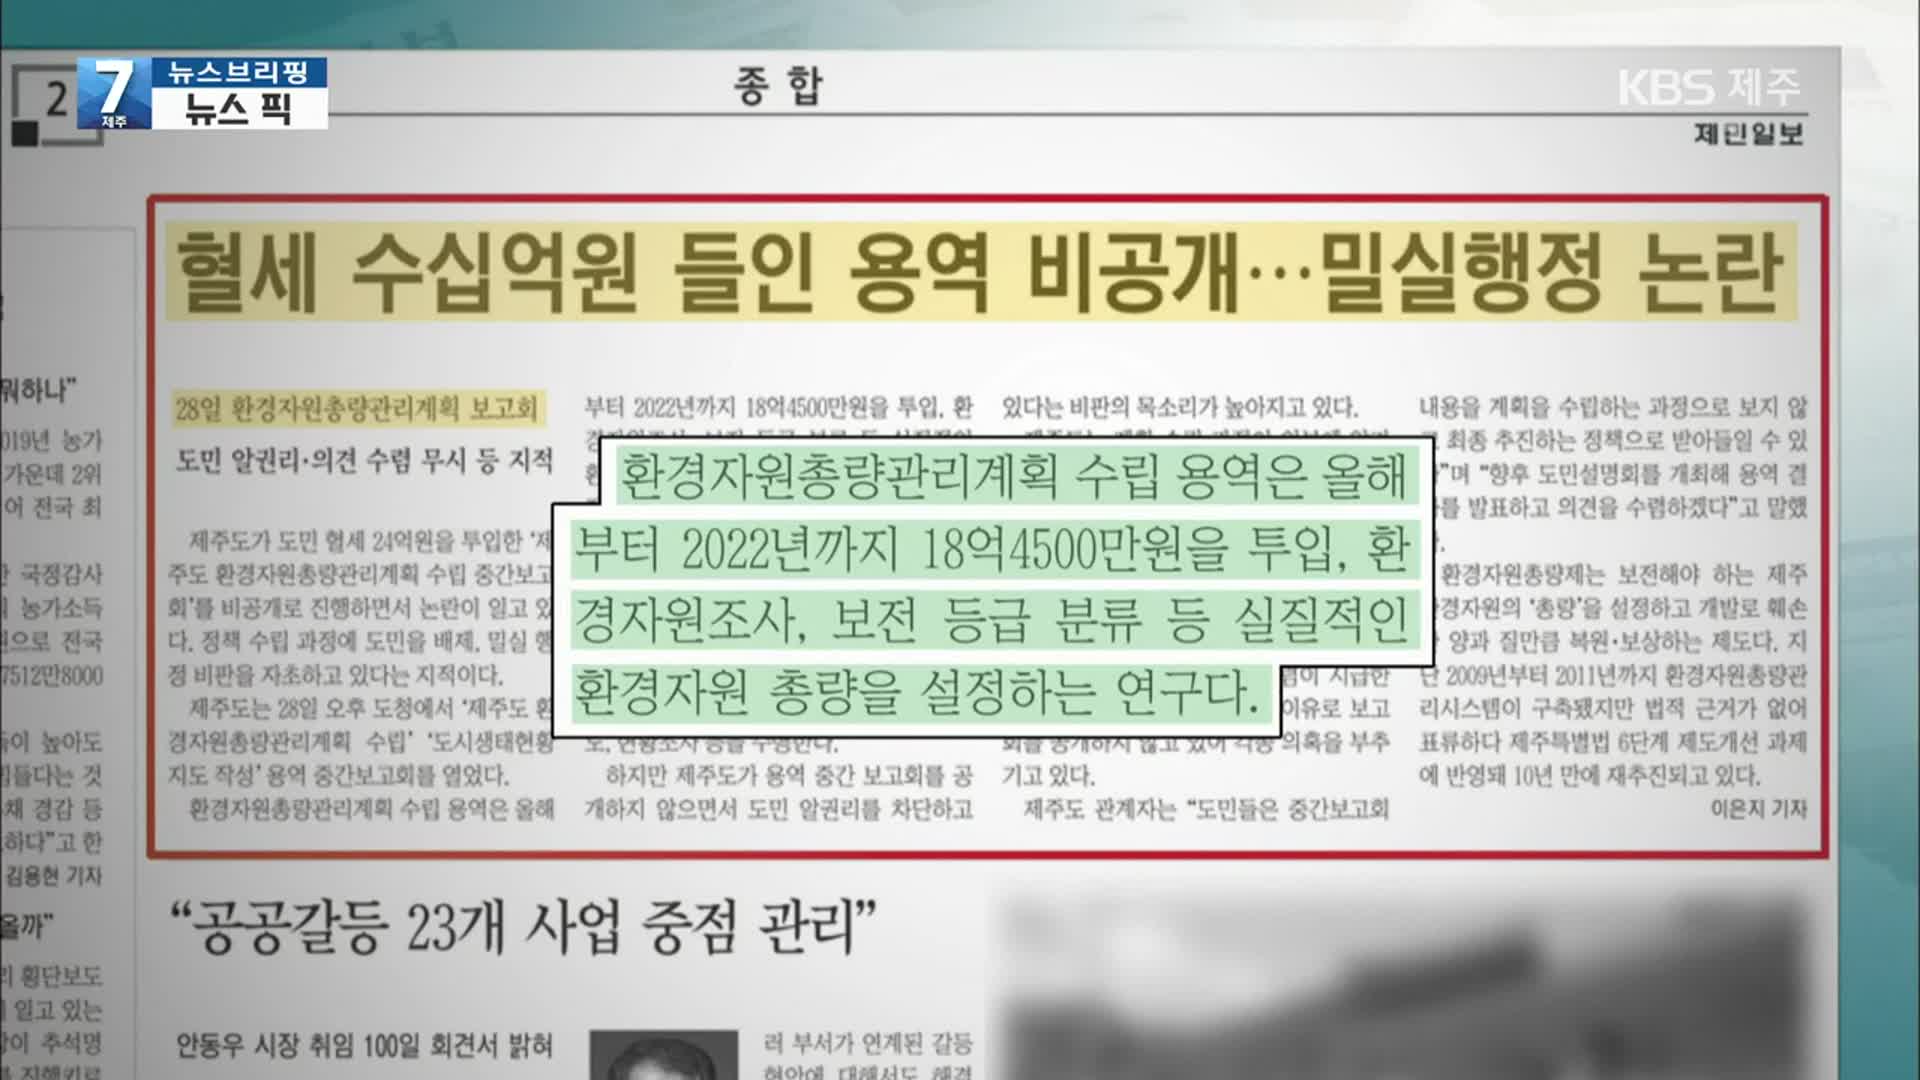 [뉴스브리핑] “혈세 수십억 원 들인 용역 비공개…밀실행정 논란” 외